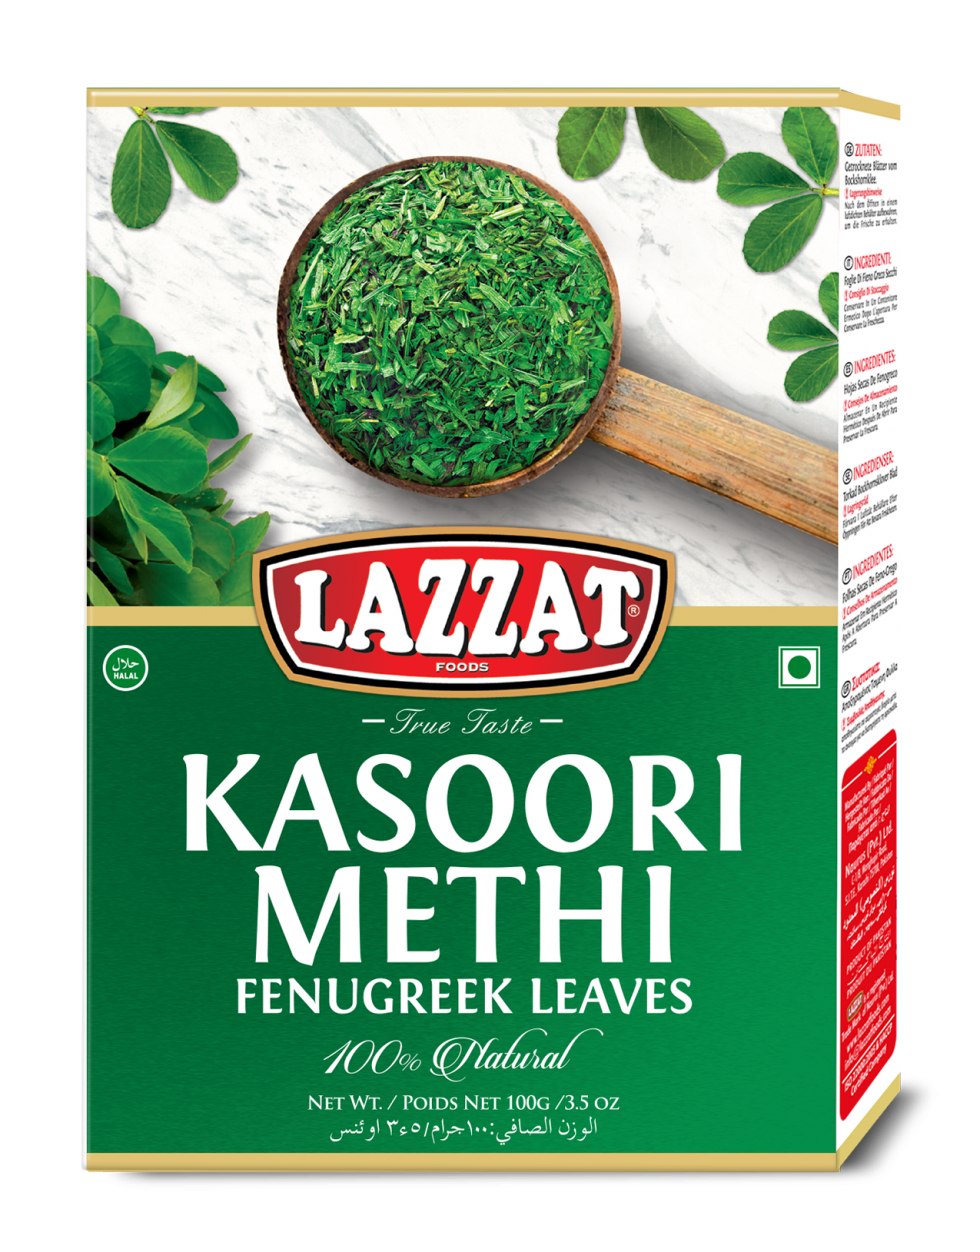 Kasoori Methi Lazzat Foods True Taste 